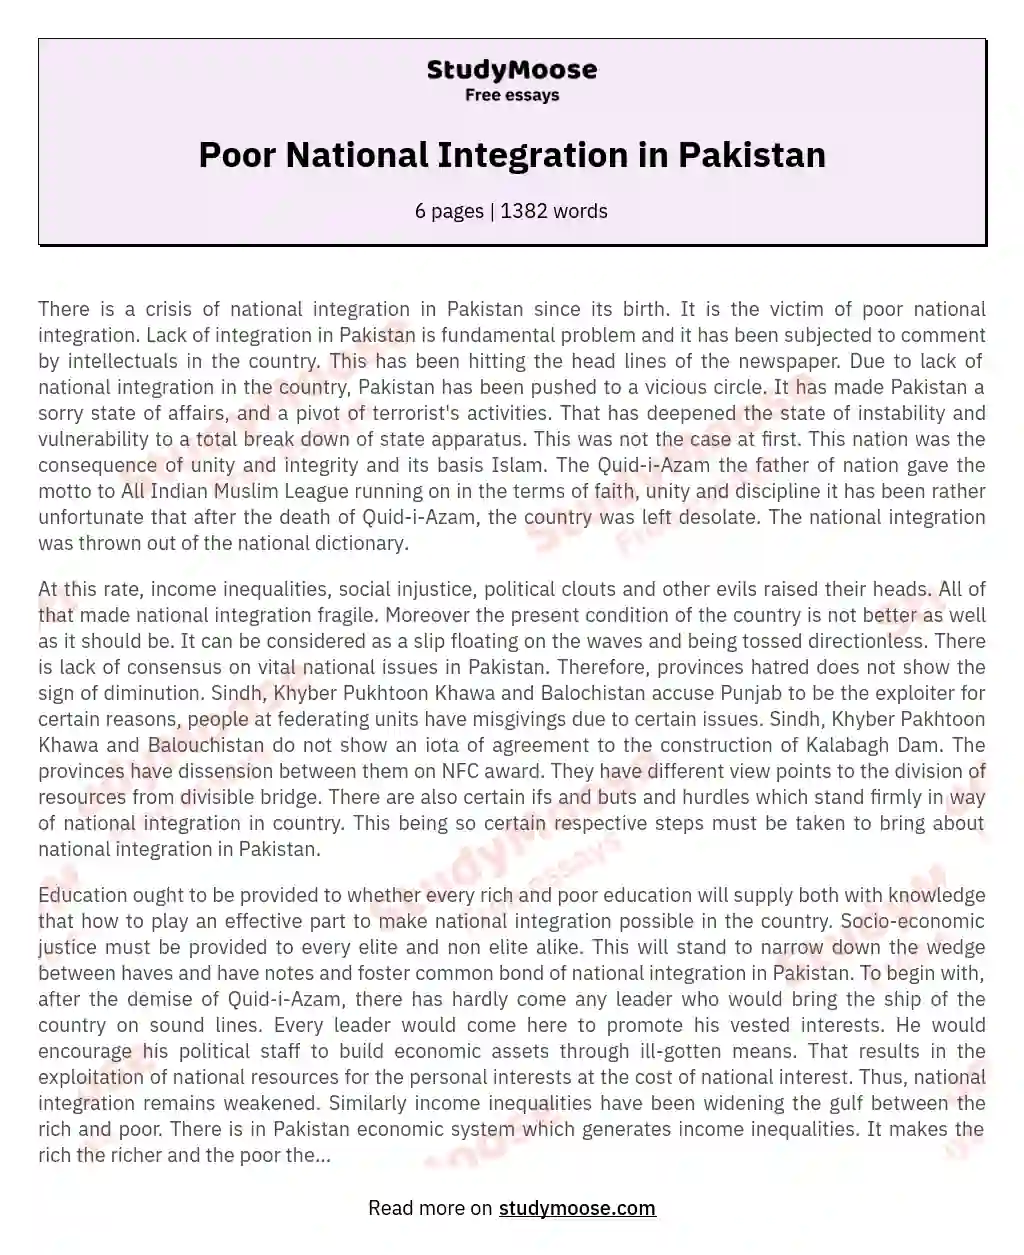 Poor National Integration in Pakistan essay